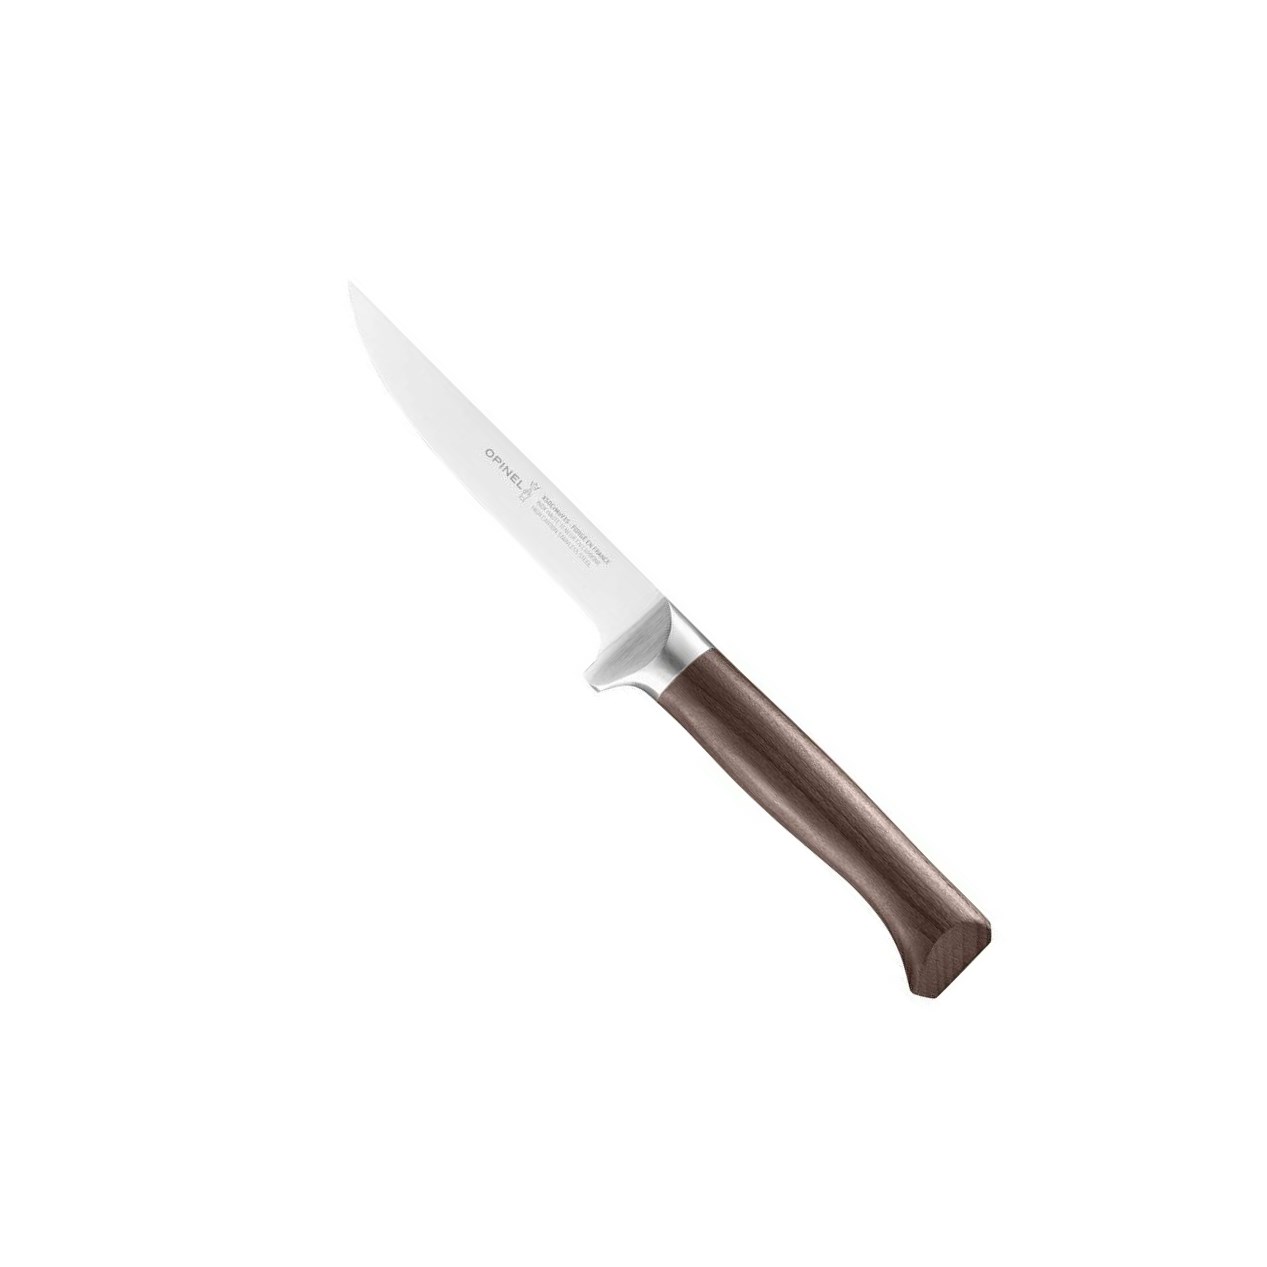 Vykosťovací nůž Les Forges 1890, 13 cm - Opinel